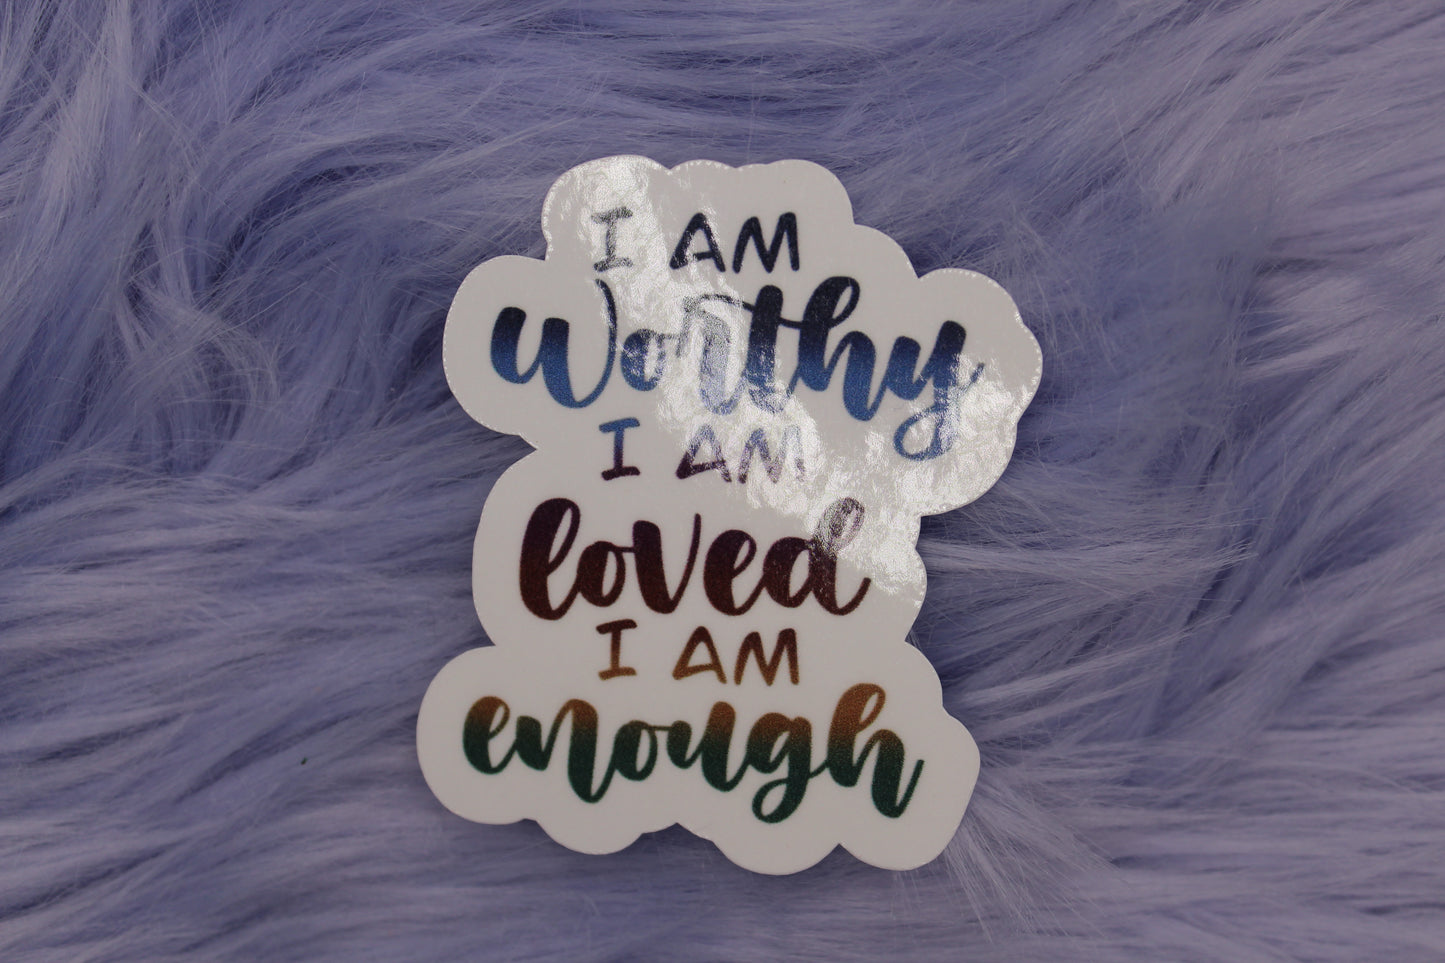 I Am Worthy, I Am Loved, I Am Enough